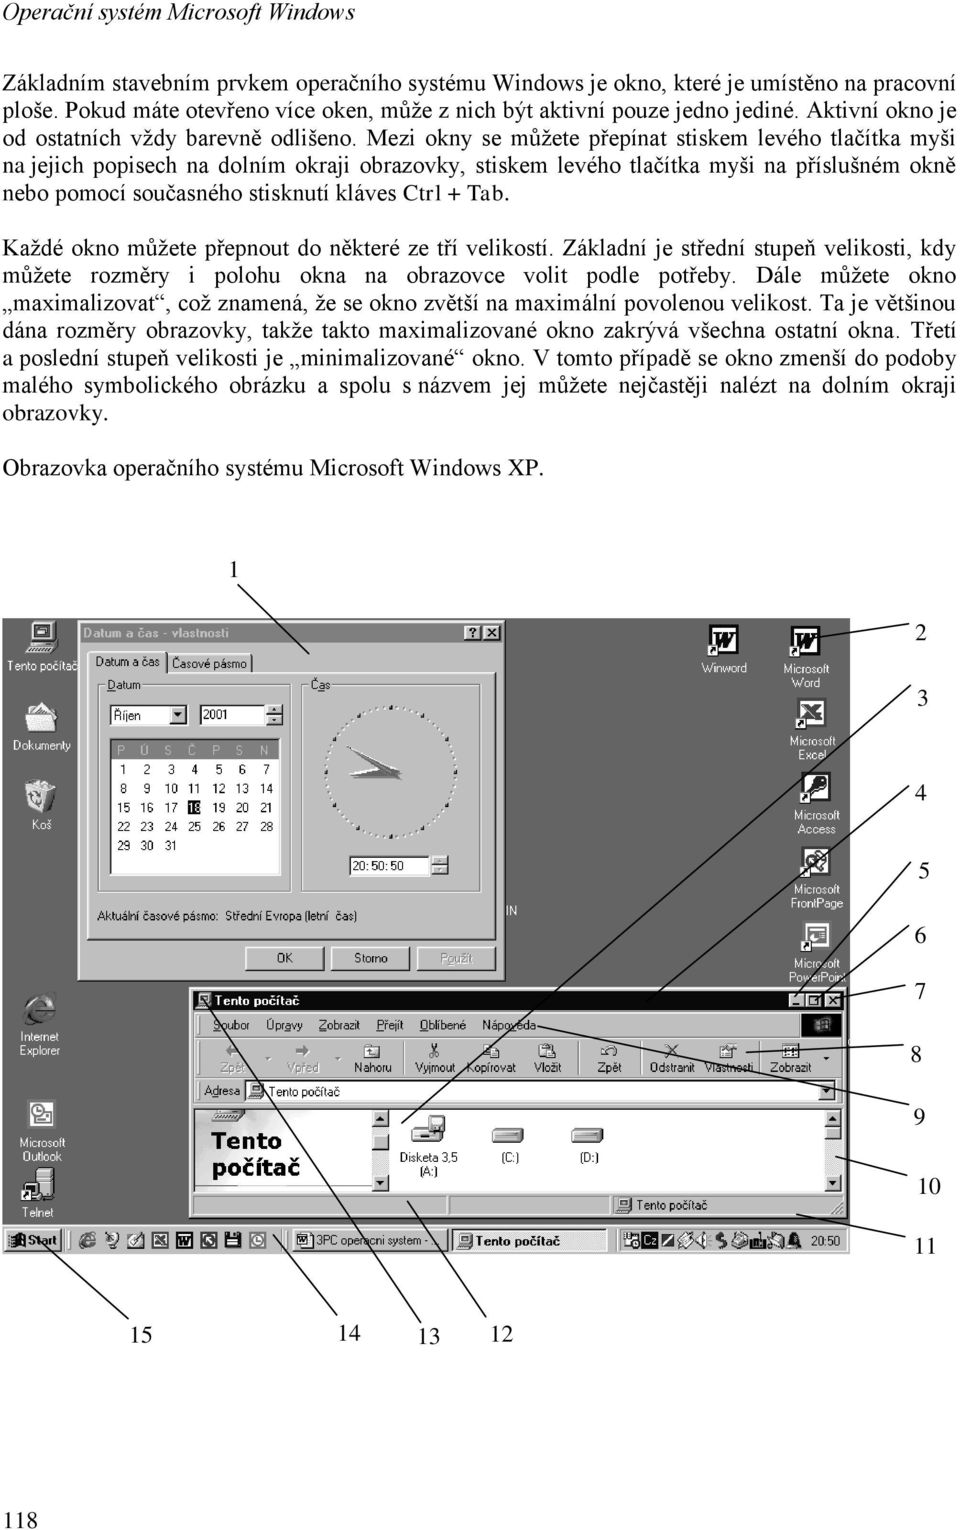 Mezi okny se můžete přepínat stiskem levého tlačítka myši na jejich popisech na dolním okraji obrazovky, stiskem levého tlačítka myši na příslušném okně nebo pomocí současného stisknutí kláves Ctrl +